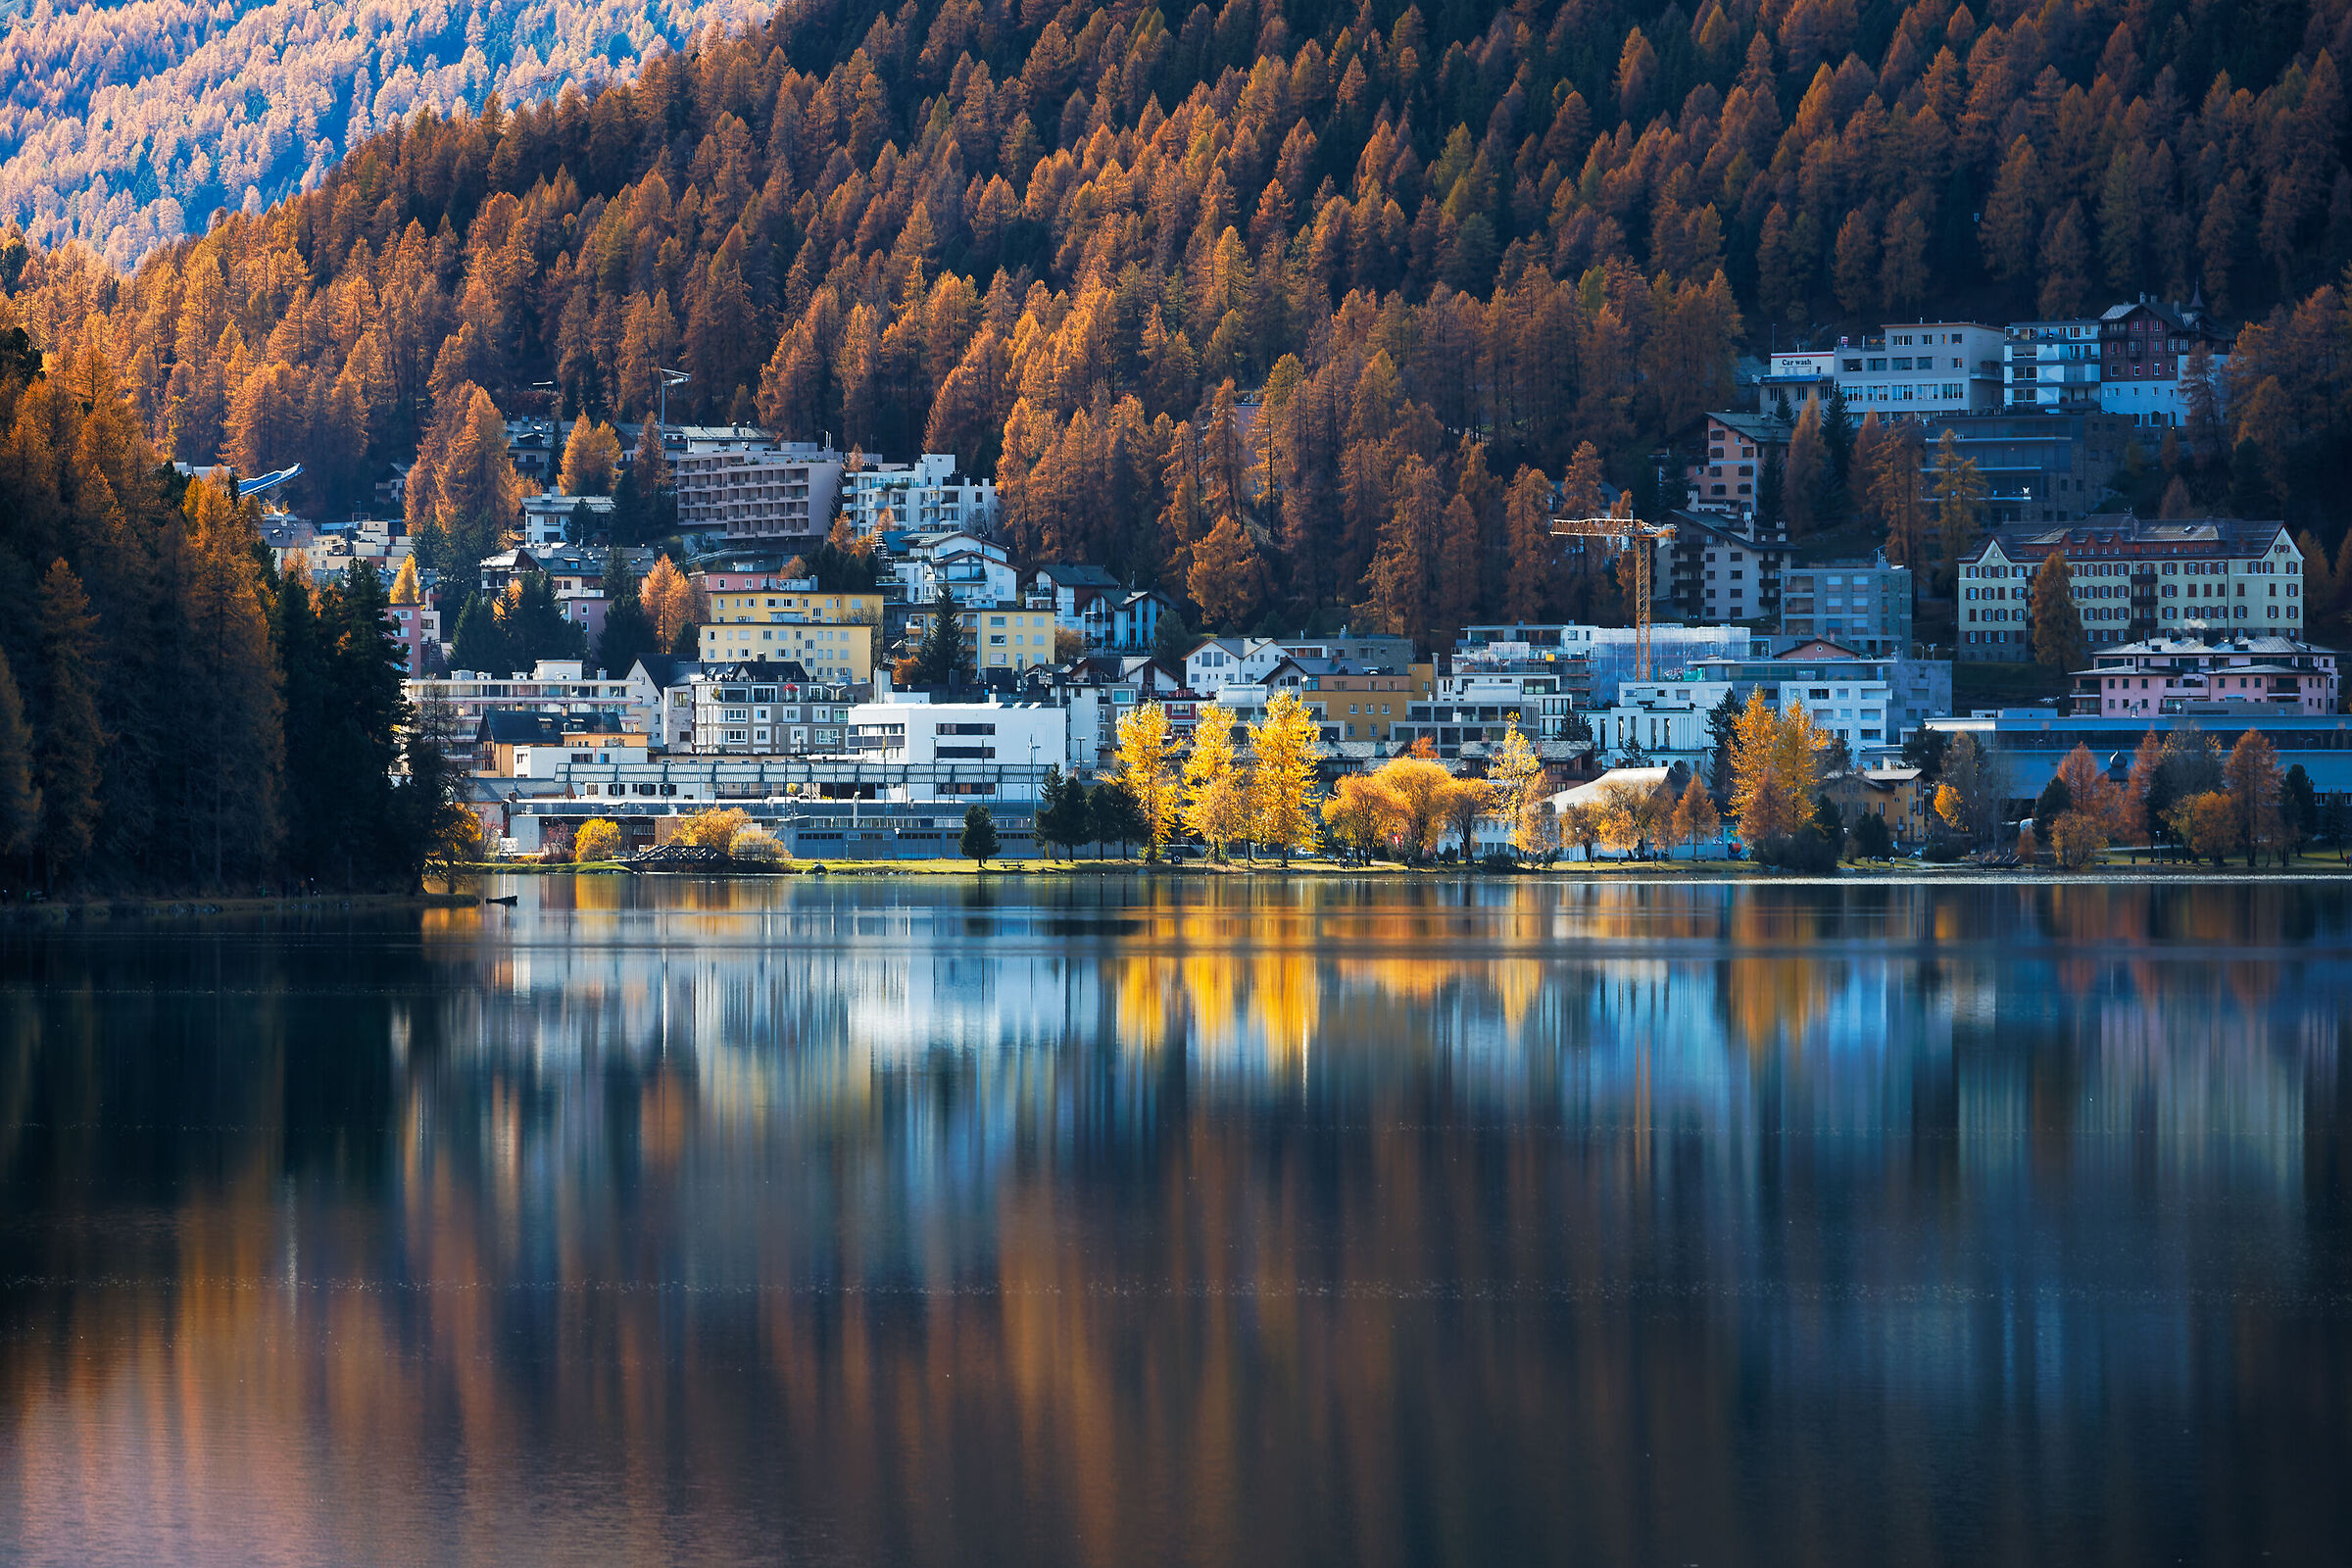 St. Moritz...